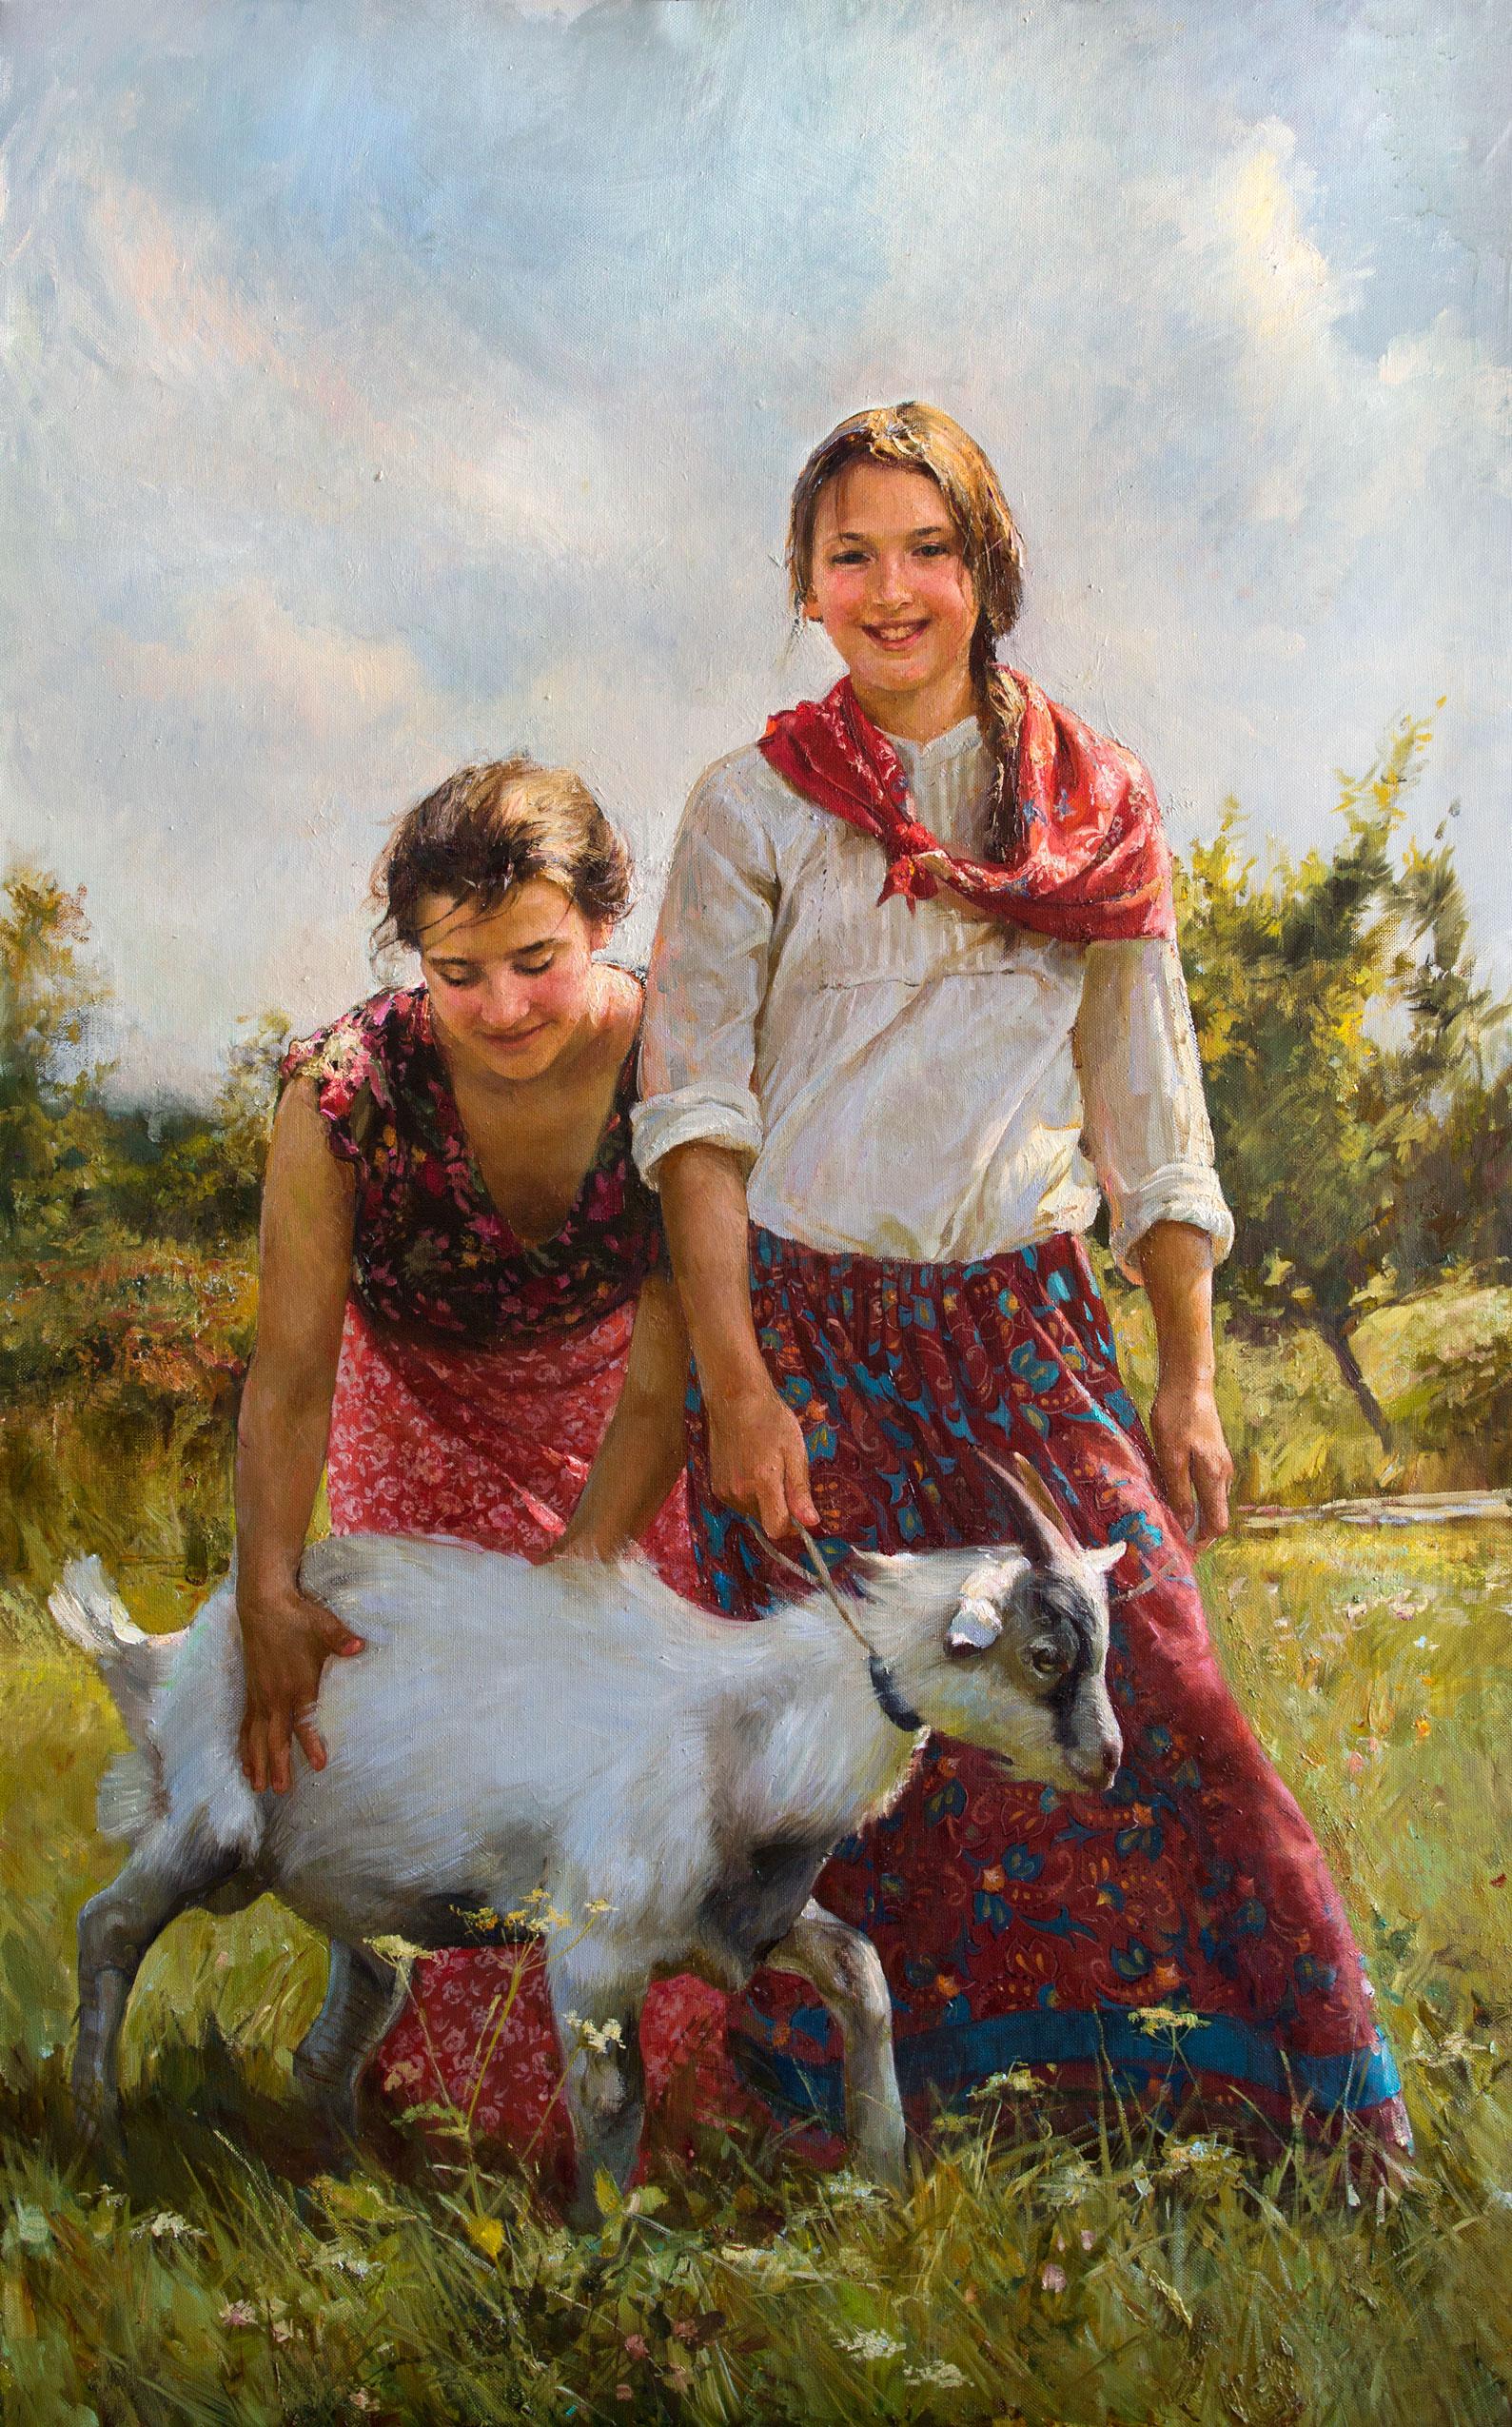 女孩与山羊. Original modern art painting